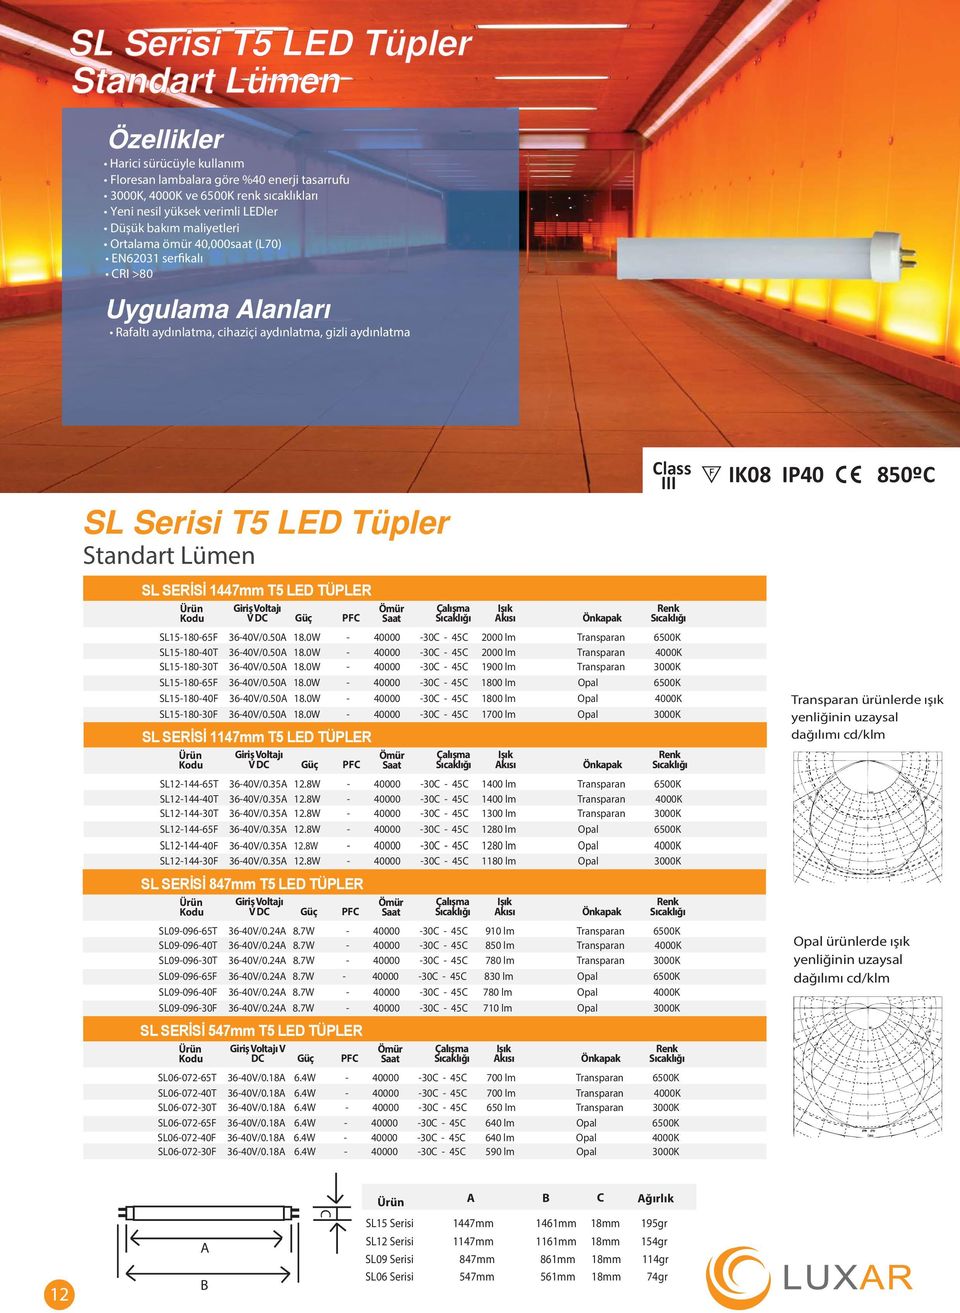 Işık Akısı Önkapak Renk SL15-180-65F 36-40V/0.50A 18.0W - 40000-30C - 45C 2000 lm Transparan 6500K SL15-180-40T 36-40V/0.50A 18.0W - 40000-30C - 45C 2000 lm Transparan 4000K SL15-180-30T 36-40V/0.